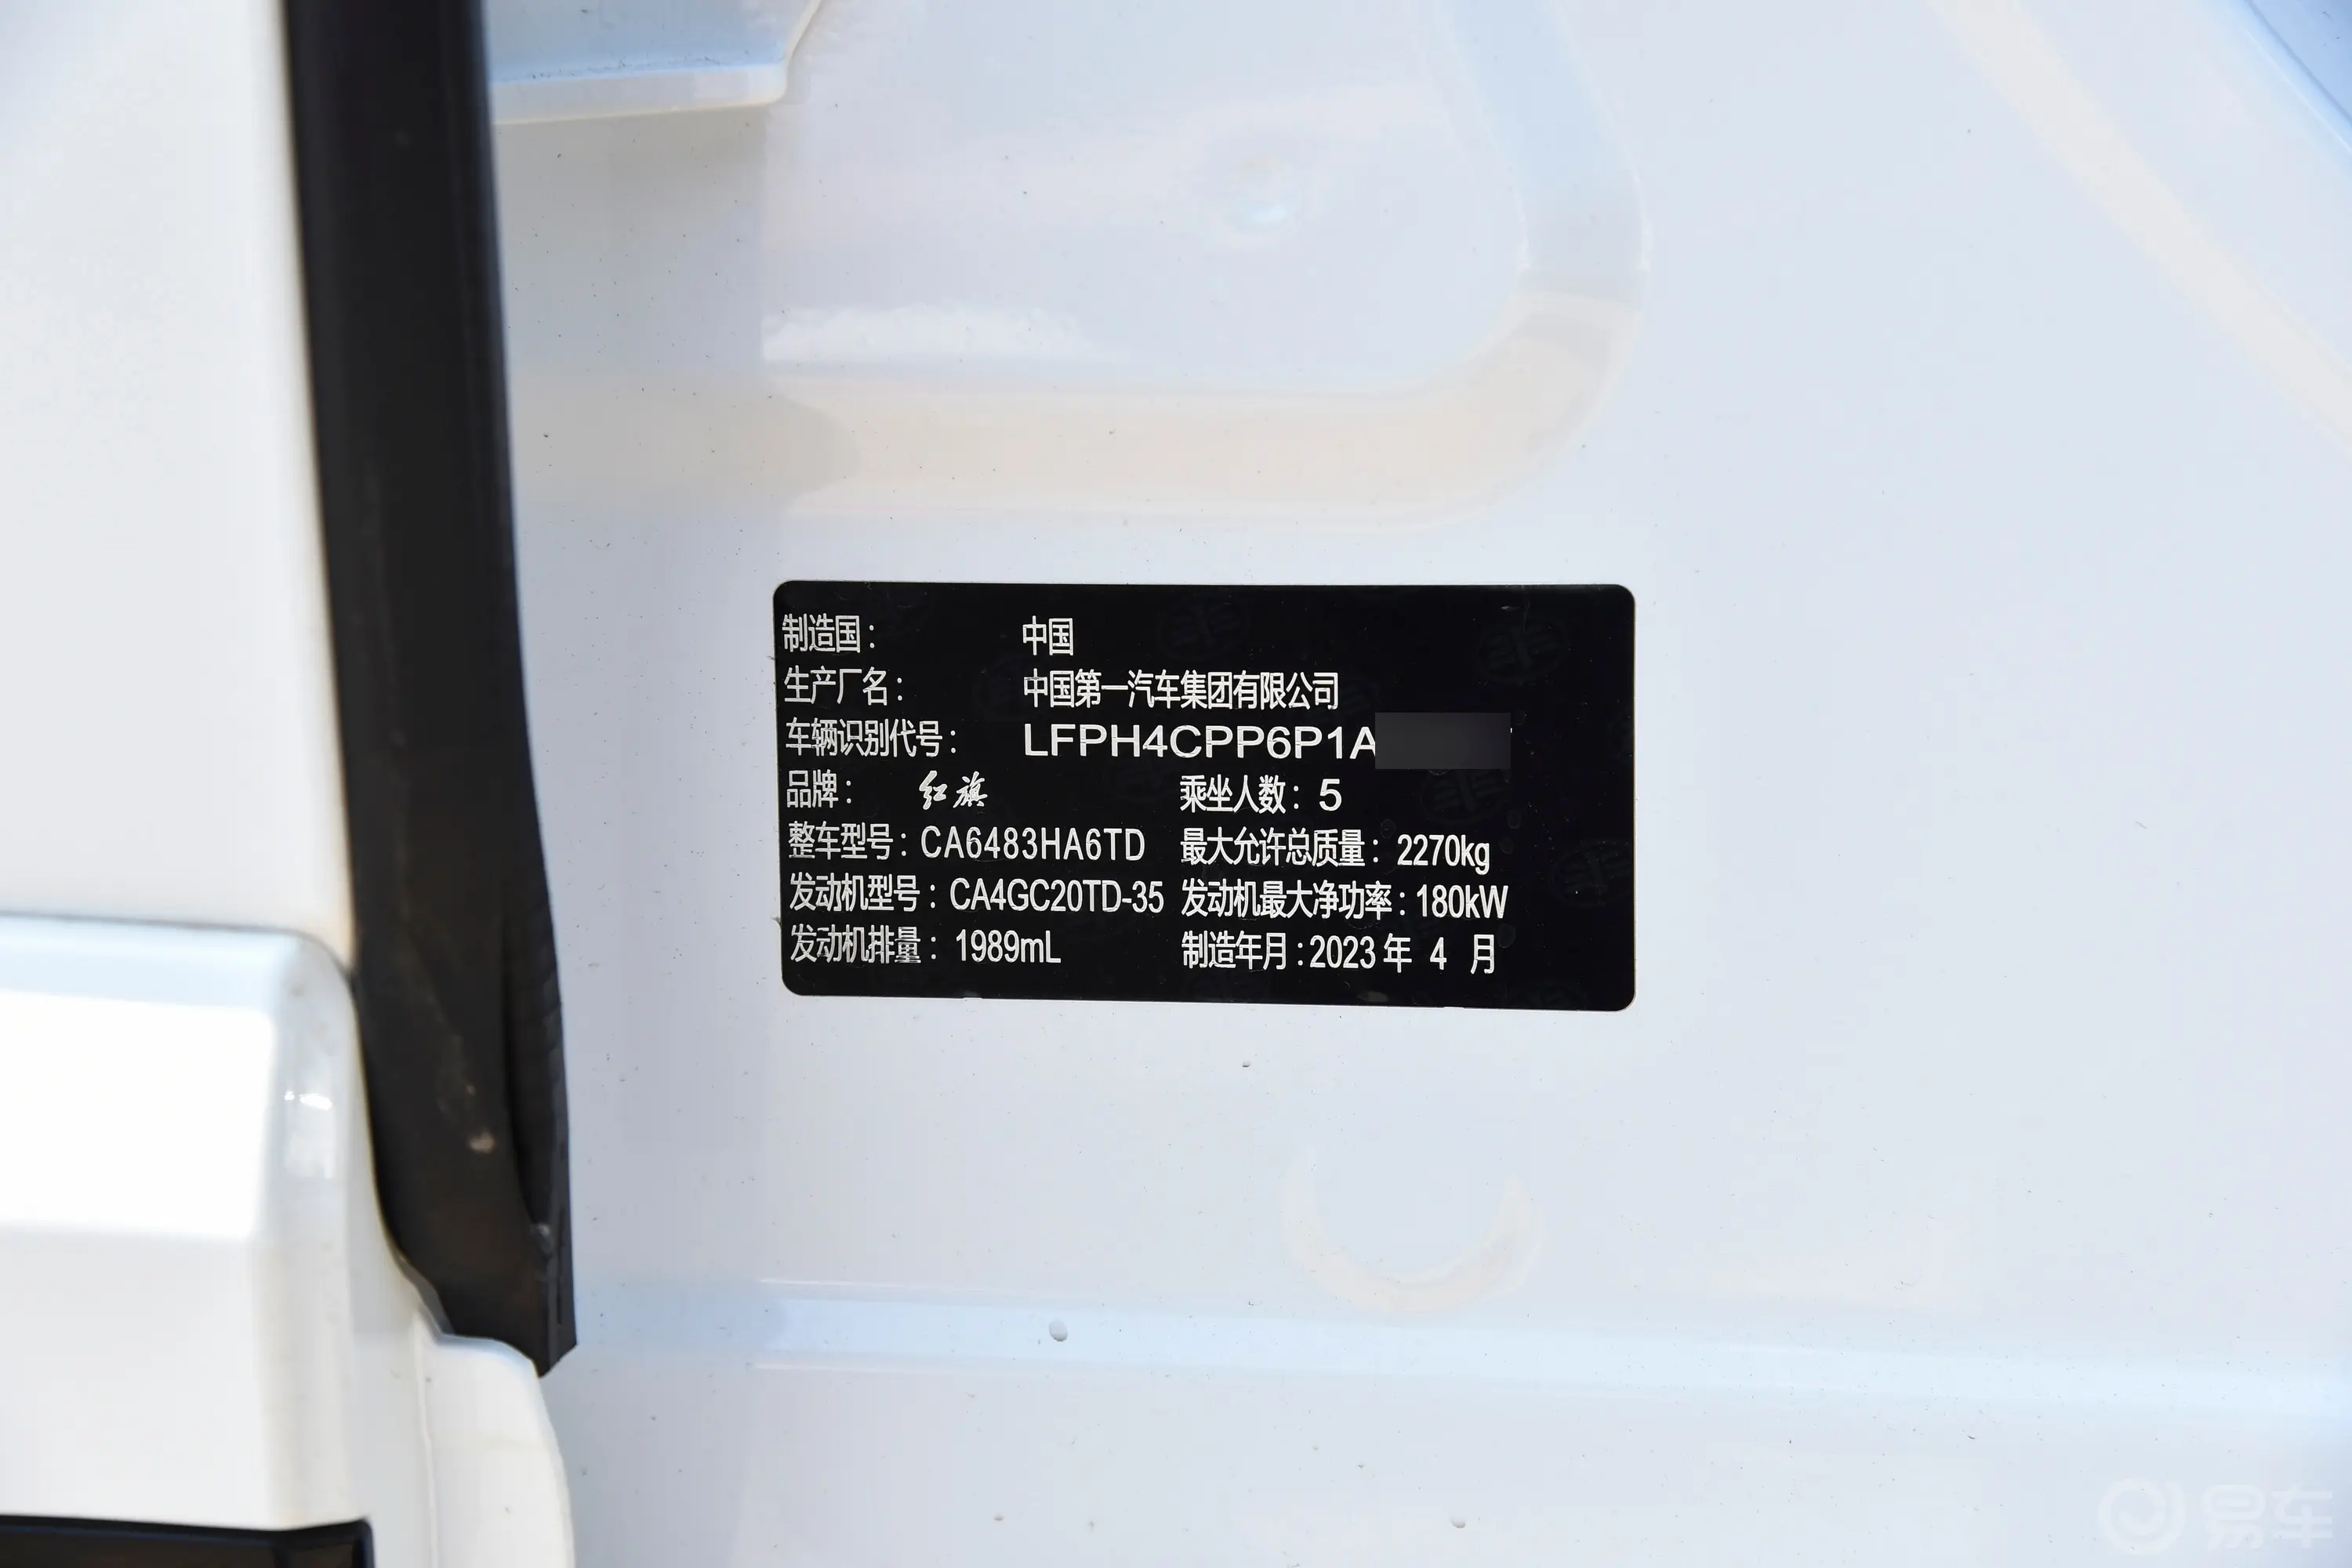 红旗HS52.0T 四驱旗领Pro版车辆信息铭牌